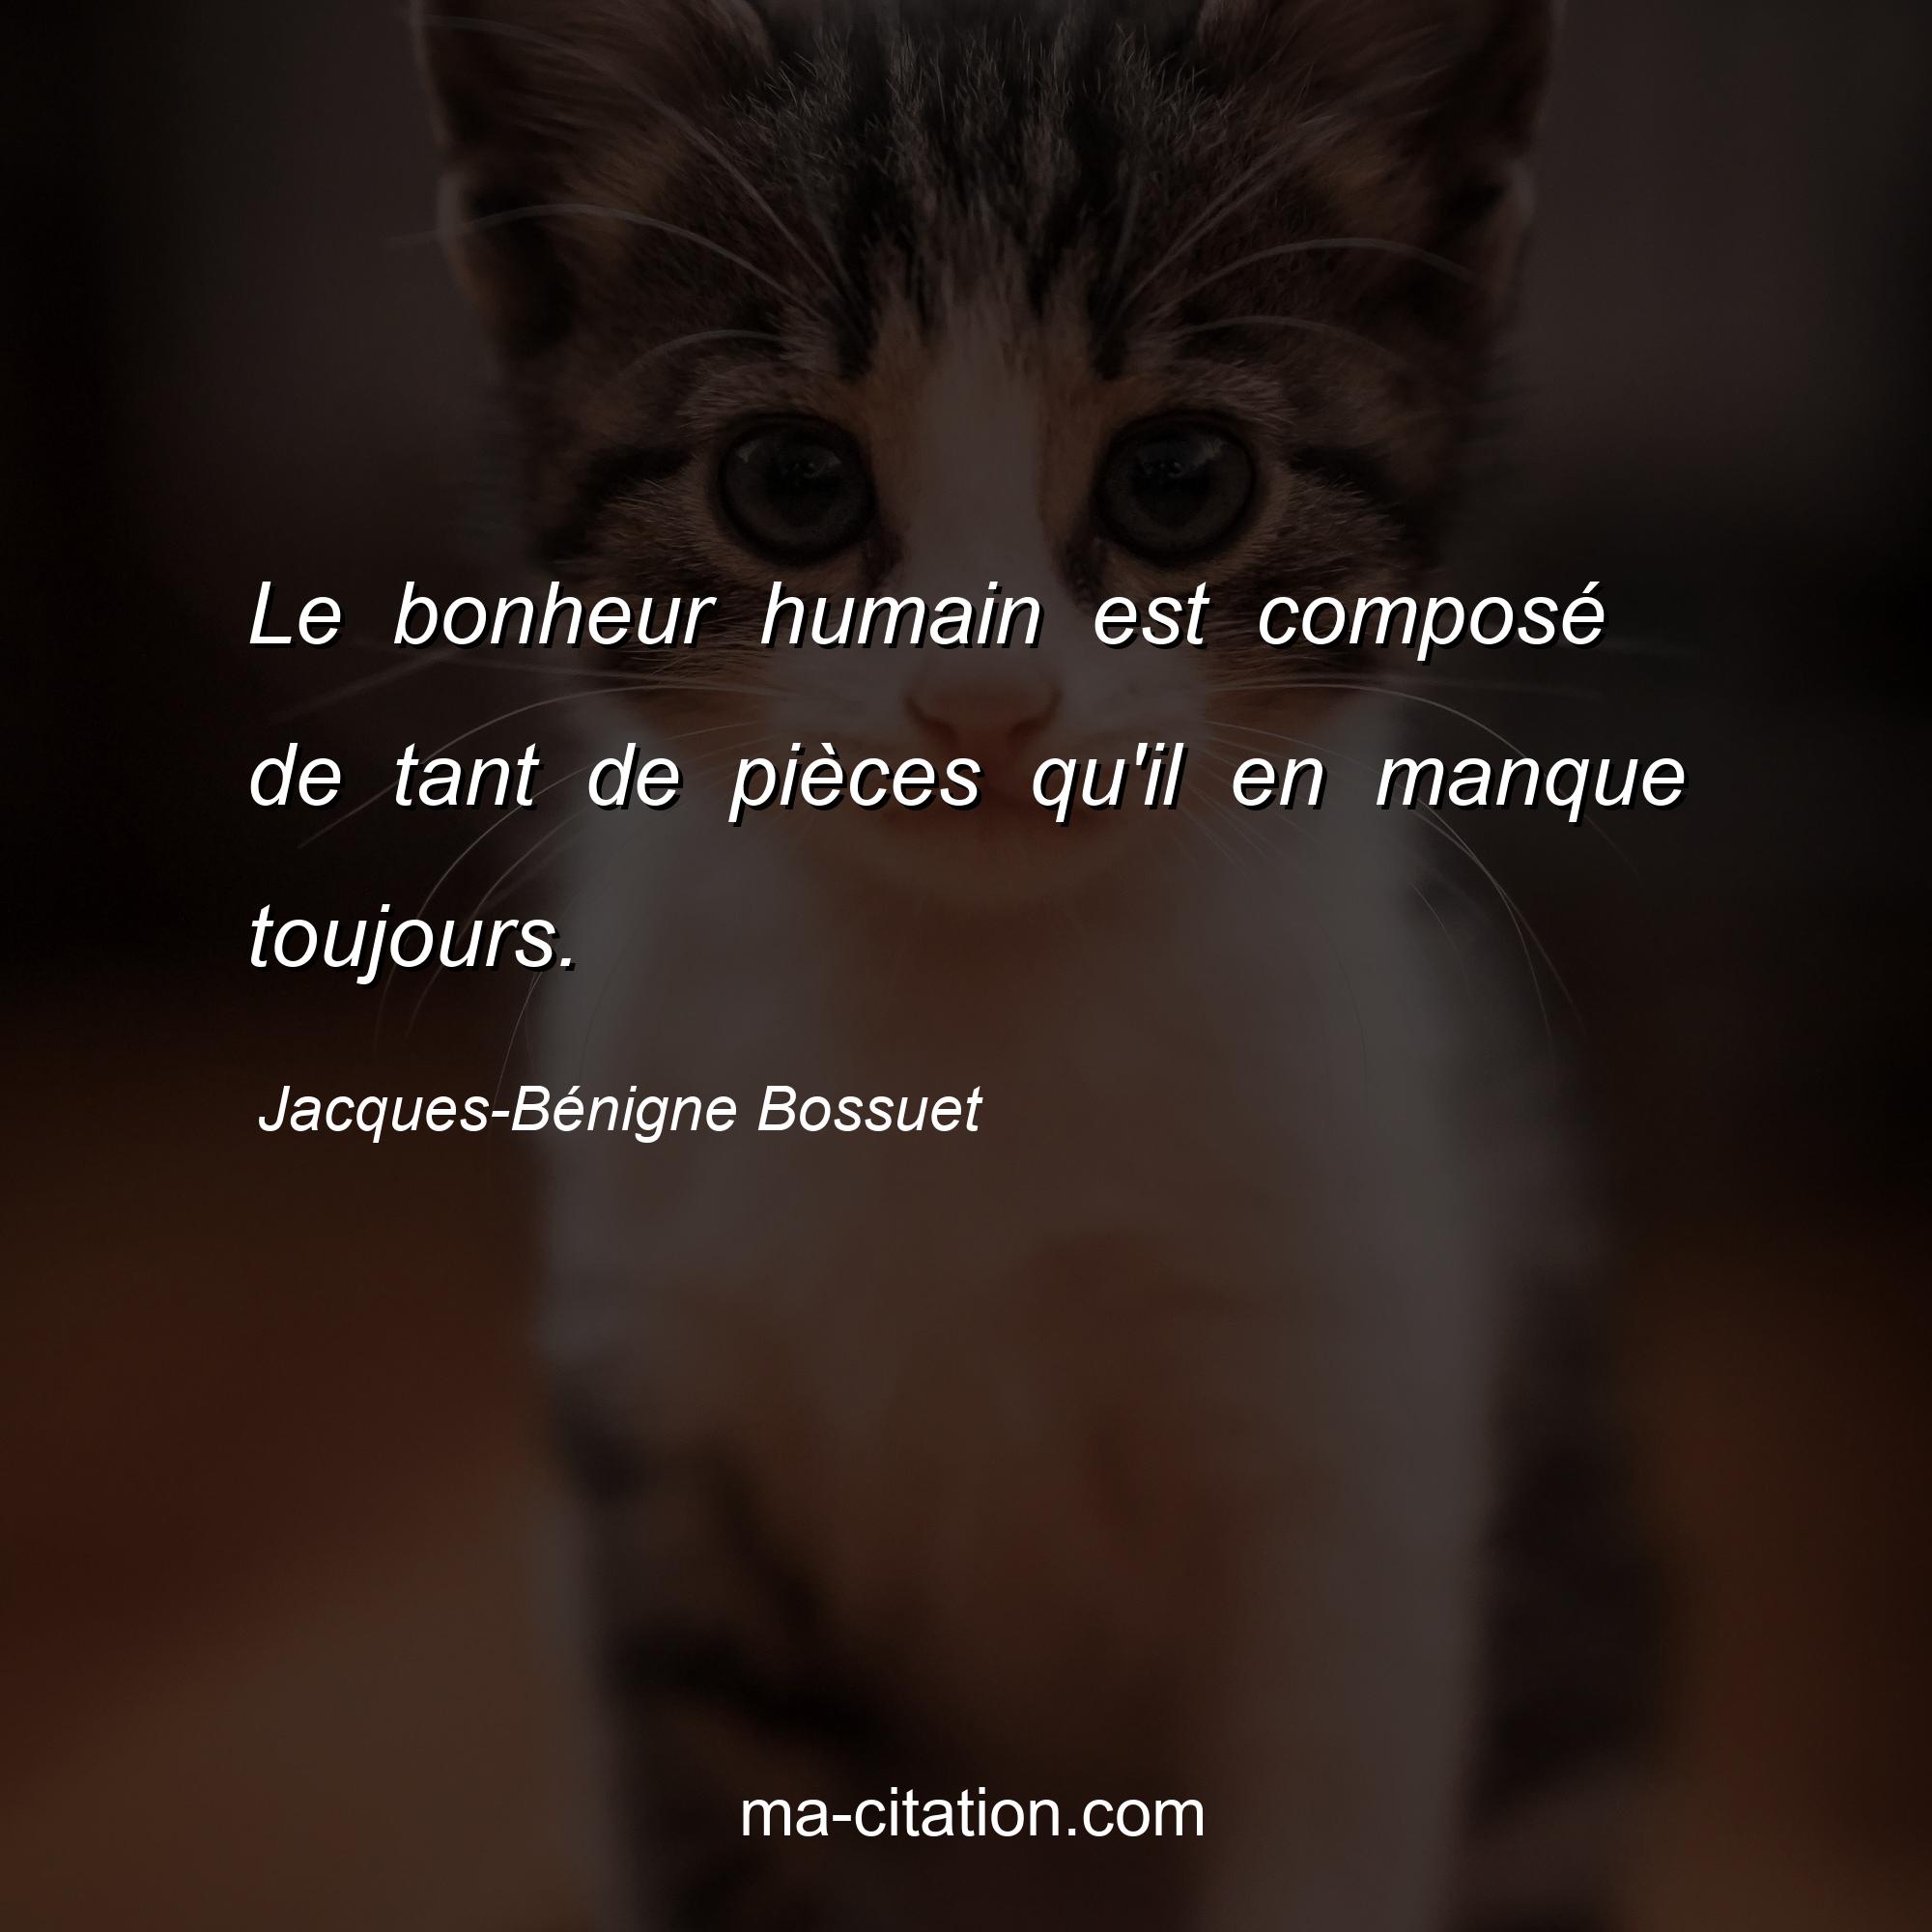 Jacques-Bénigne Bossuet : Le bonheur humain est composé de tant de pièces qu'il en manque toujours.